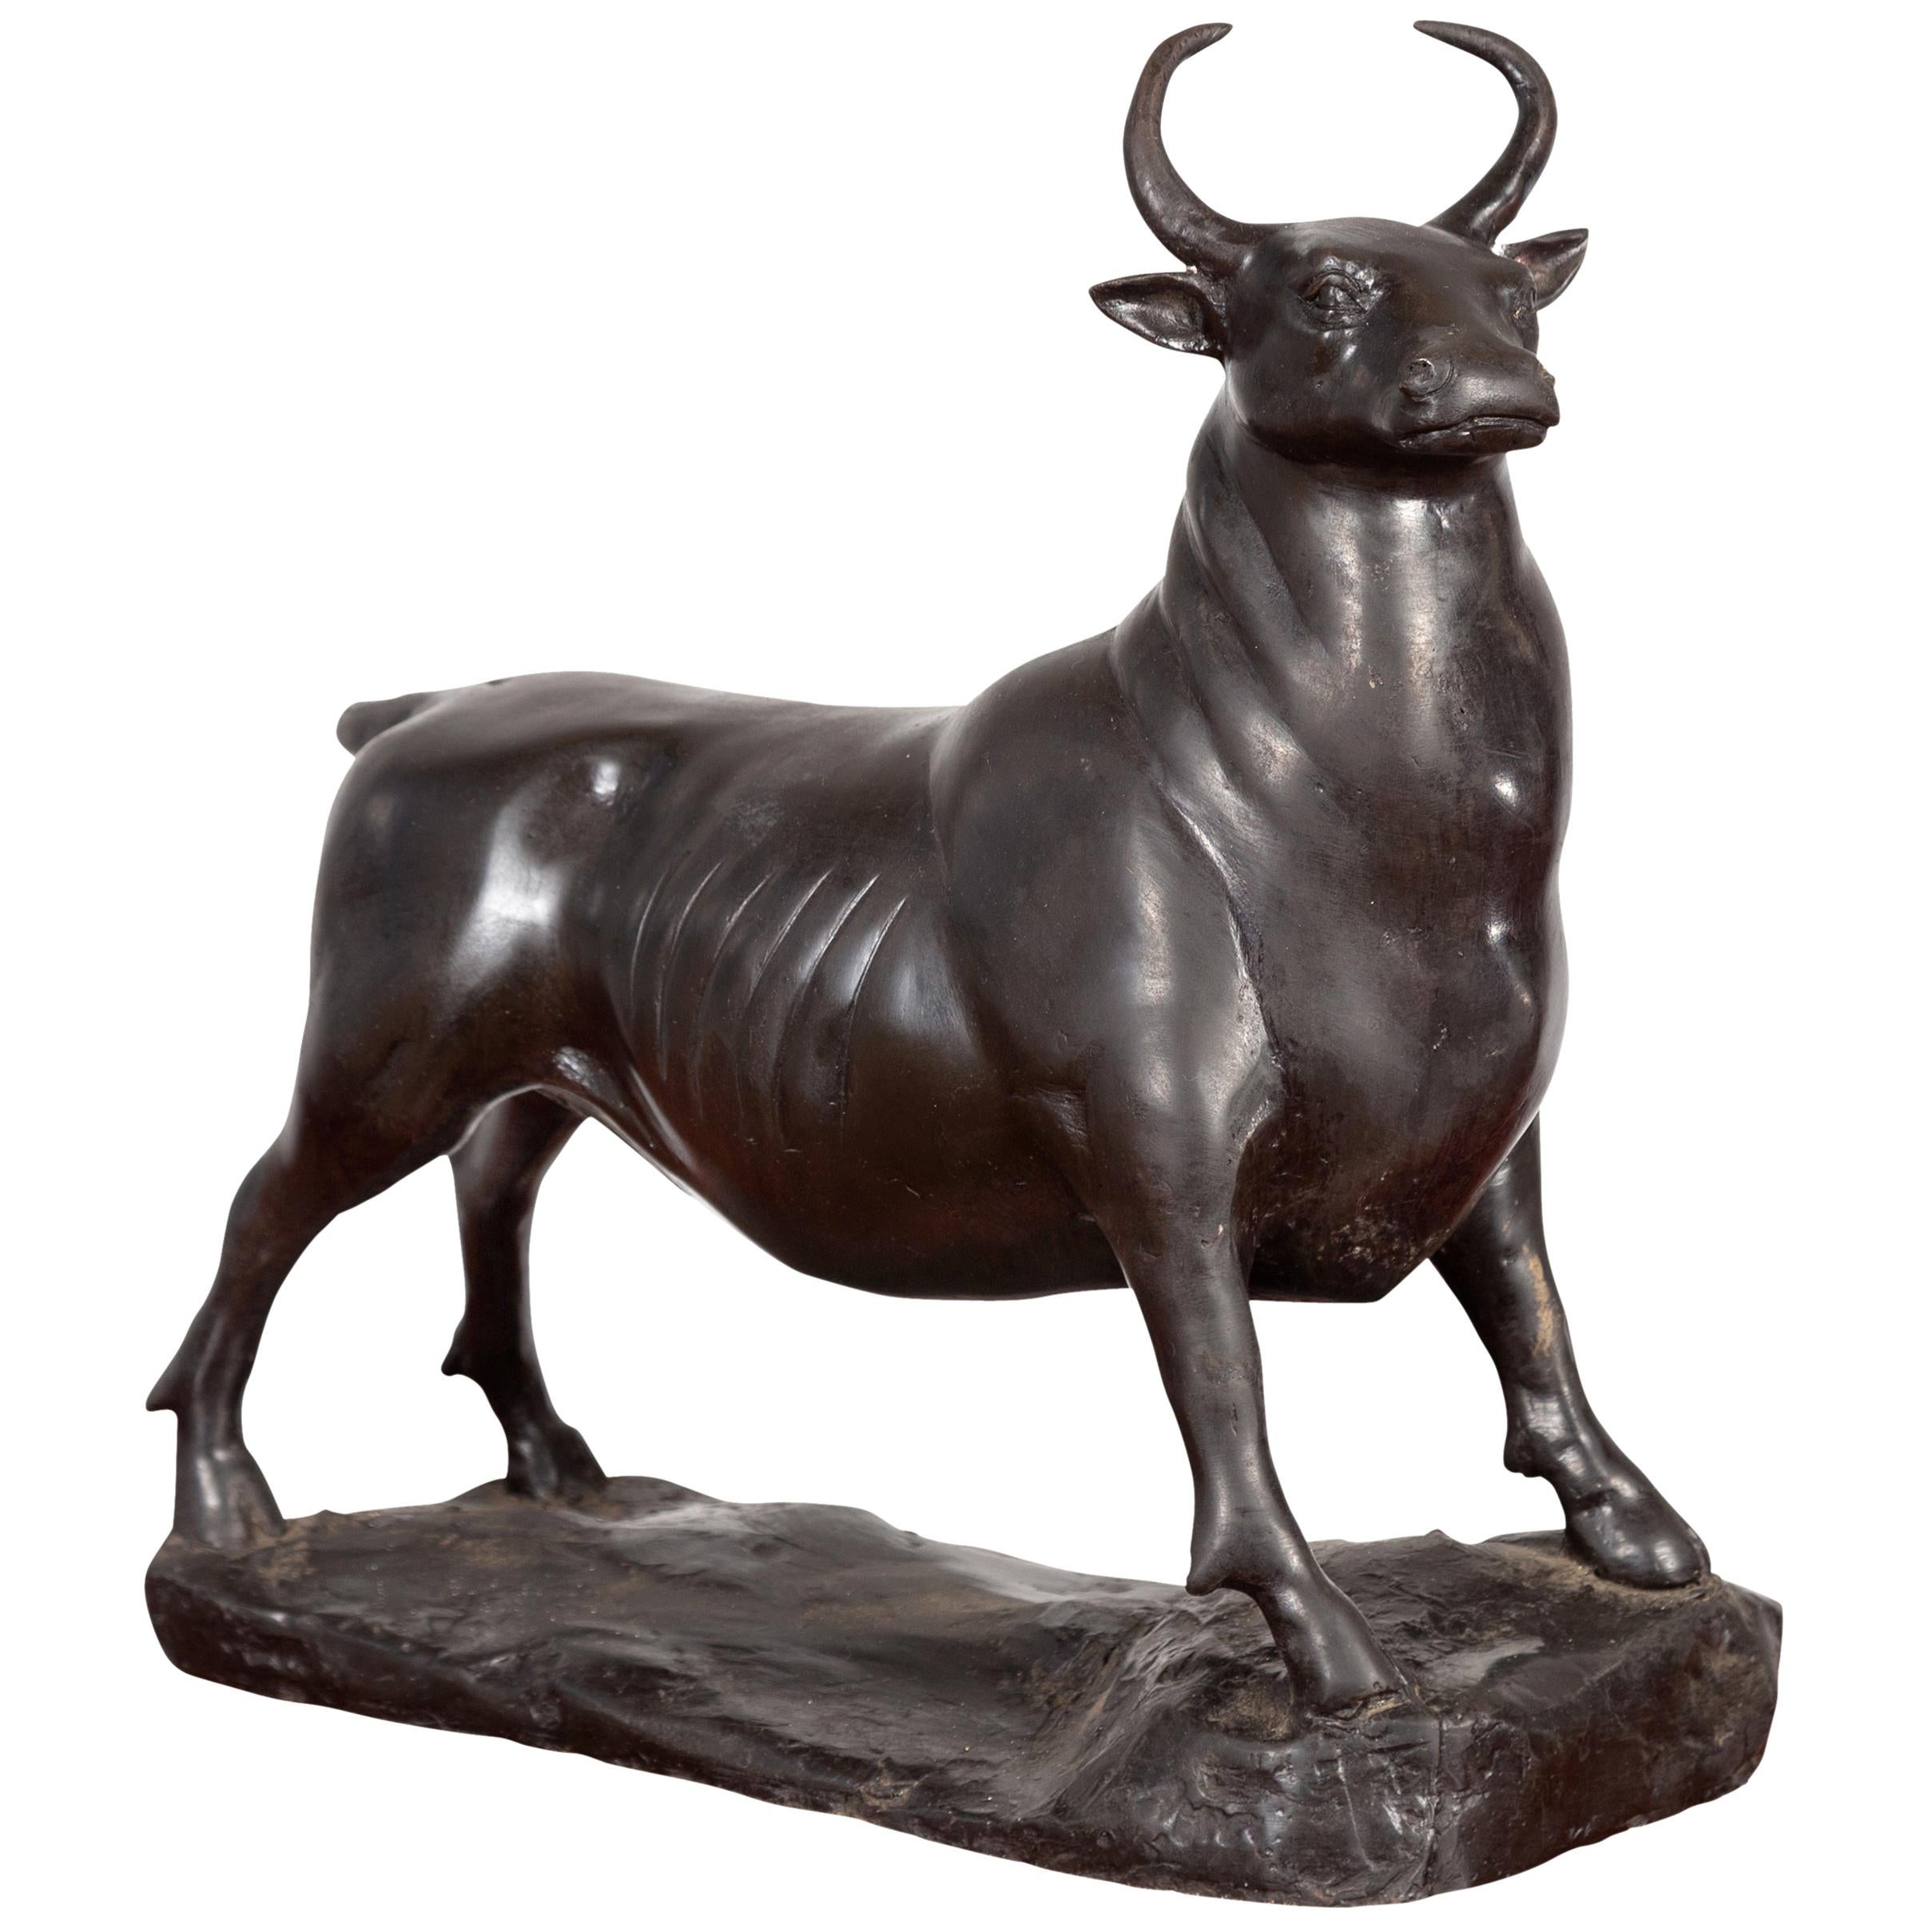 Sculpture contemporaine en bronze à cire perdue représentant un taureau avec patine sombre